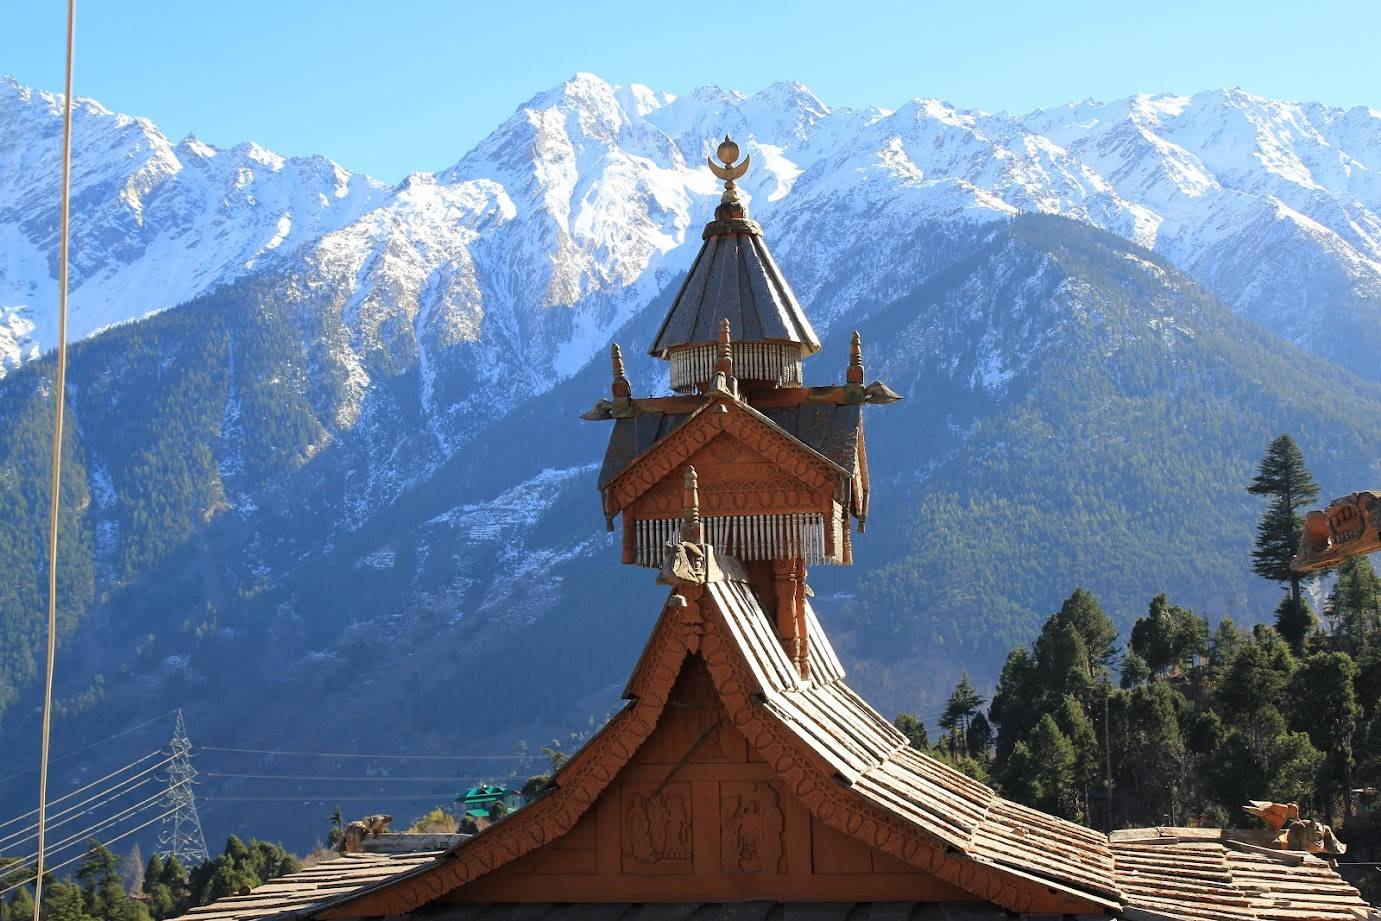 Podróż przez Himalaje / Travel through the Himalayas - Himachal Pradesh: Kalpa [PL/ENG]